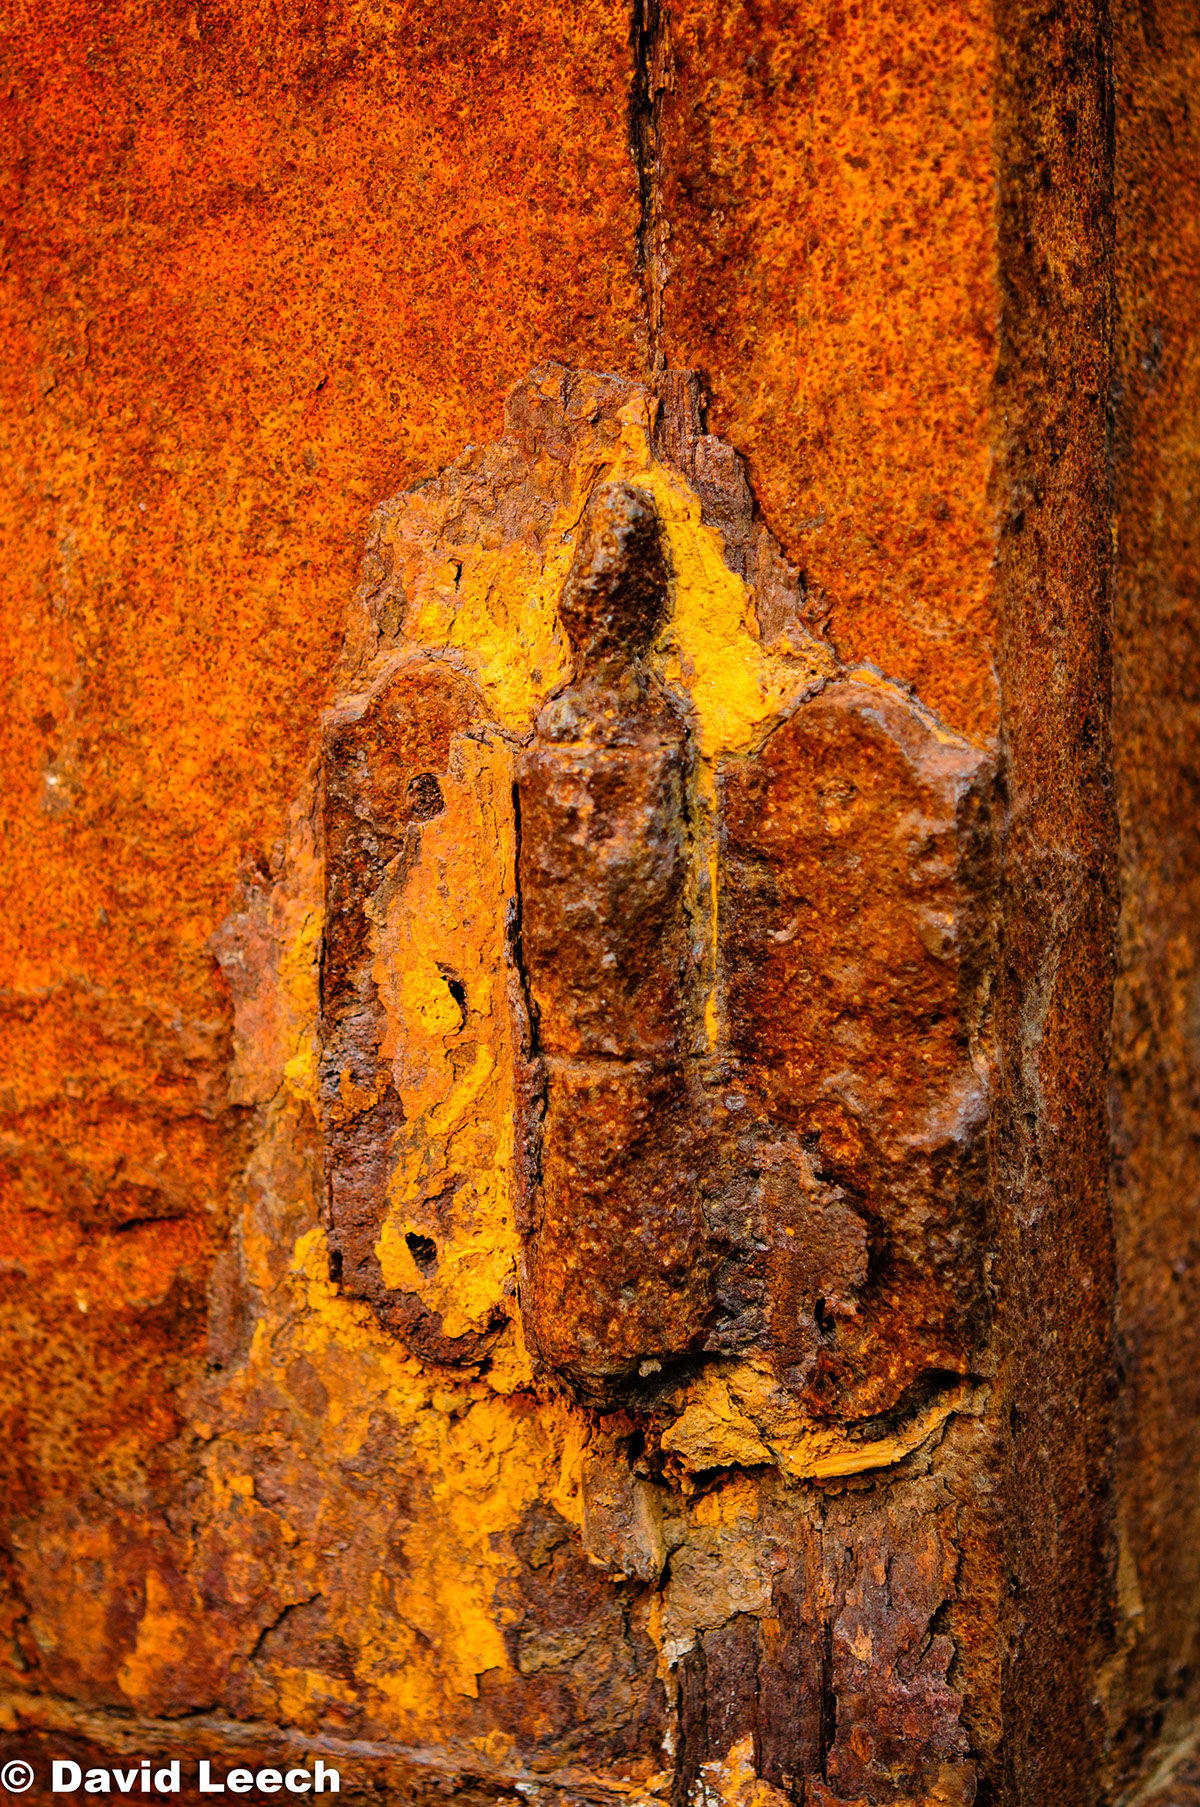 abstract conceptual experimental impressionistic metal corrosion derelict abandoned Disintegrating rust perish scrap Detritus Ferric oxides